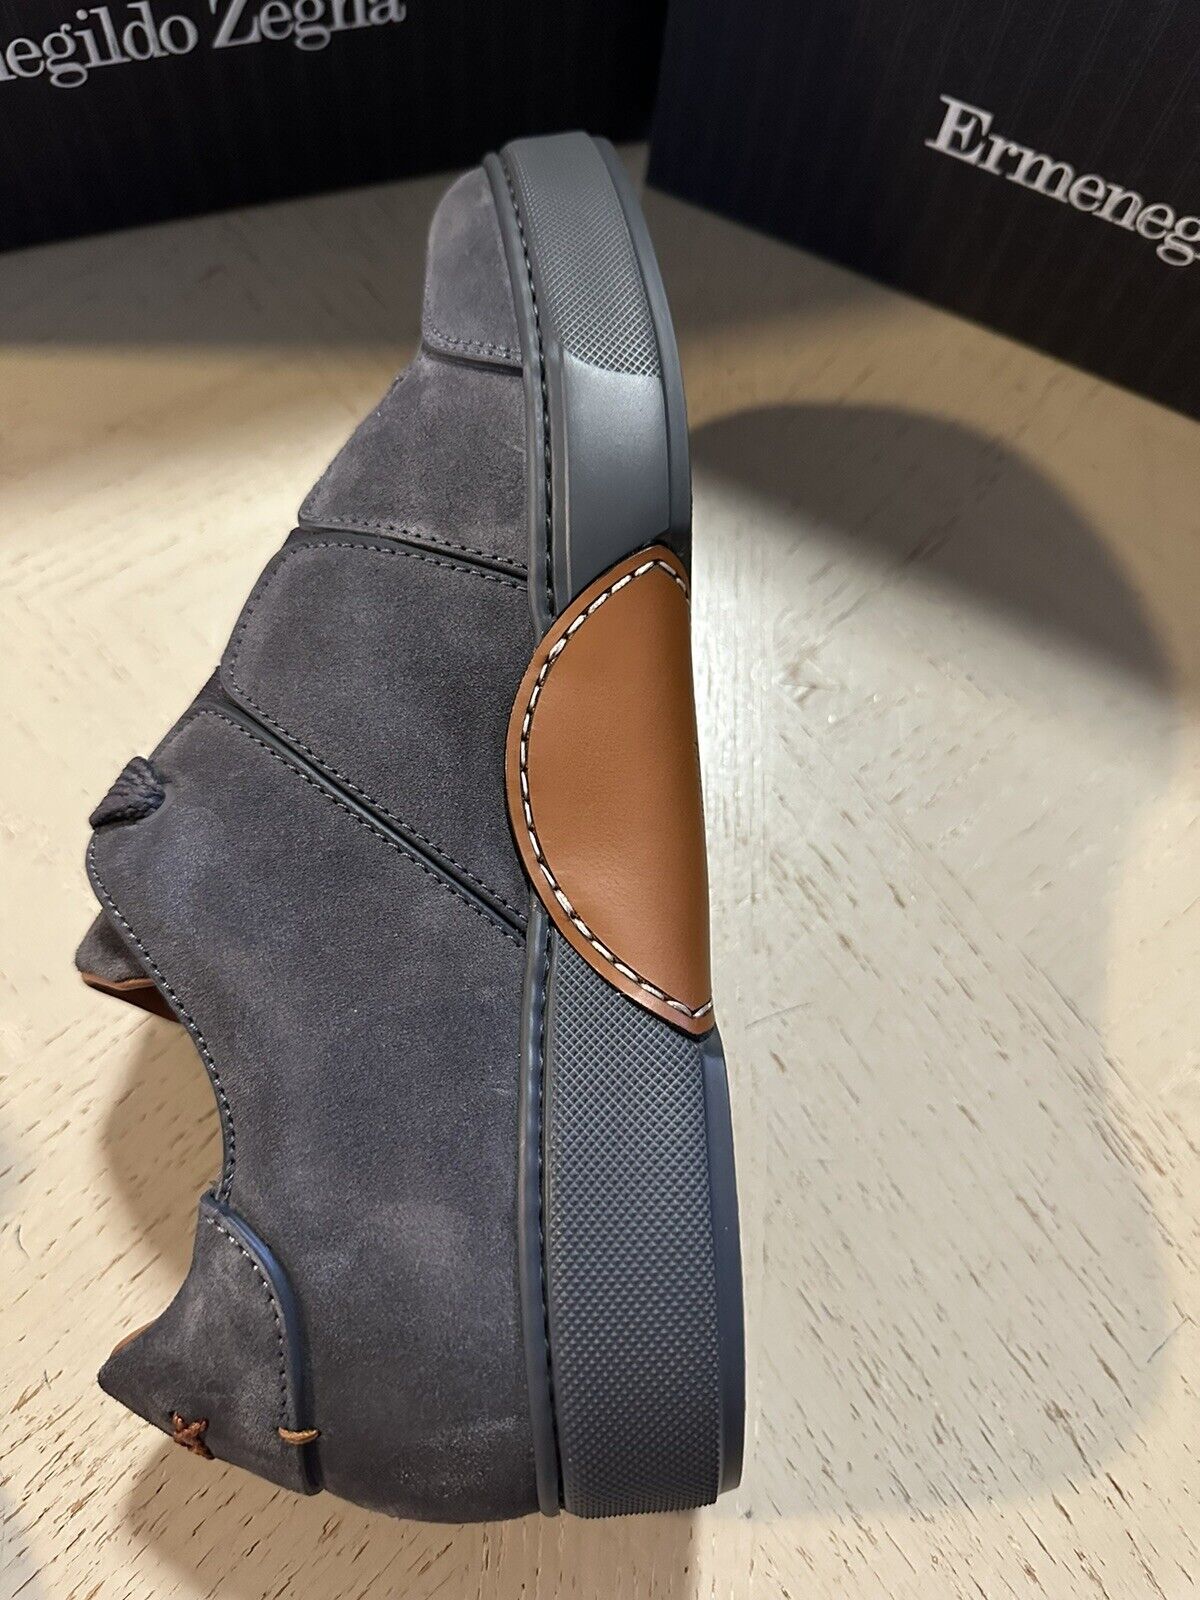 Neue $850 Ermenegildo Zegna Couture Wildleder/Leder Sneakers Schuhe Dunkelgrau 9,5 US